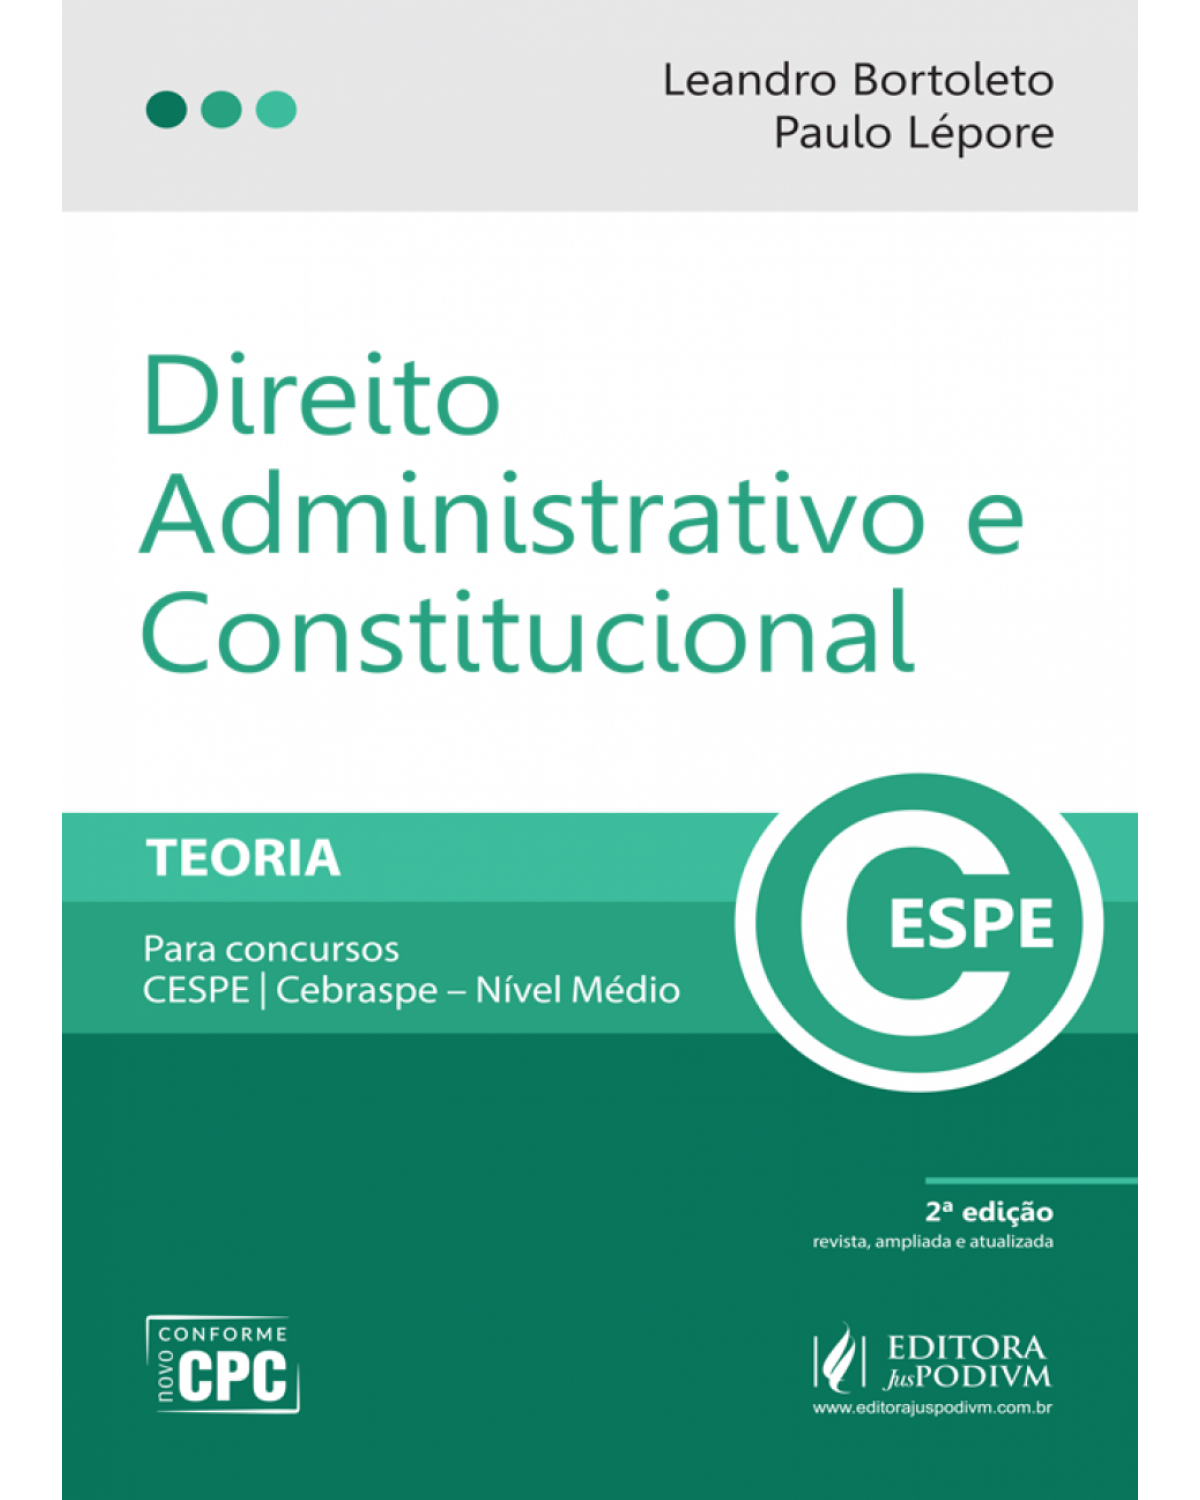 Direito administrativo e constitucional - Teoria - Para concursos CESPE/Cebraspe - Nível médio - 2ª Edição | 2017